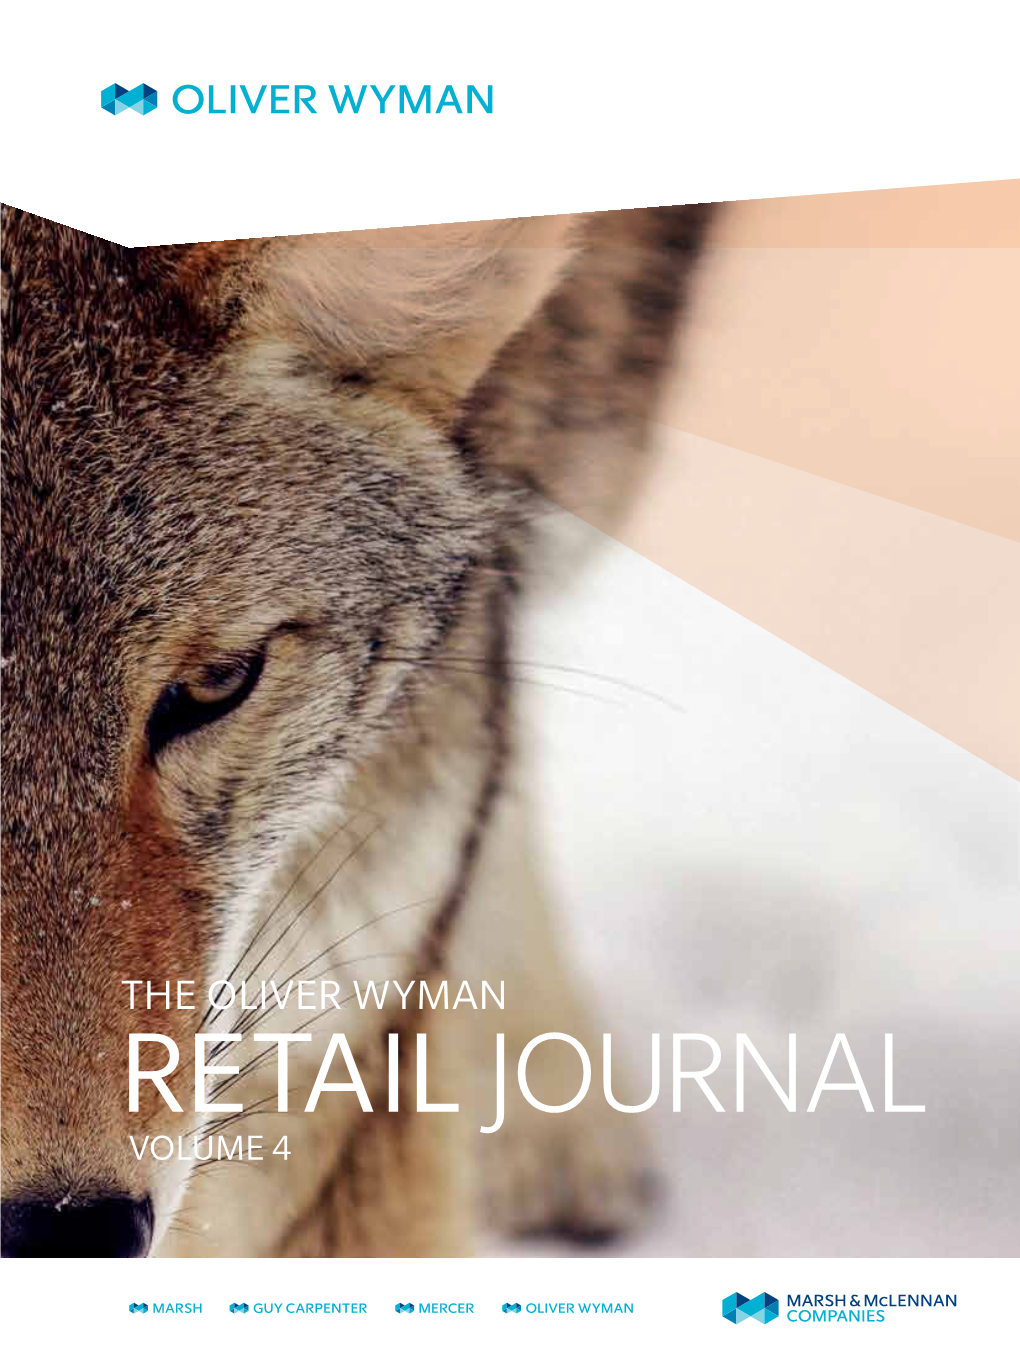 The Oliver Wyman Retail Journal Volume 4